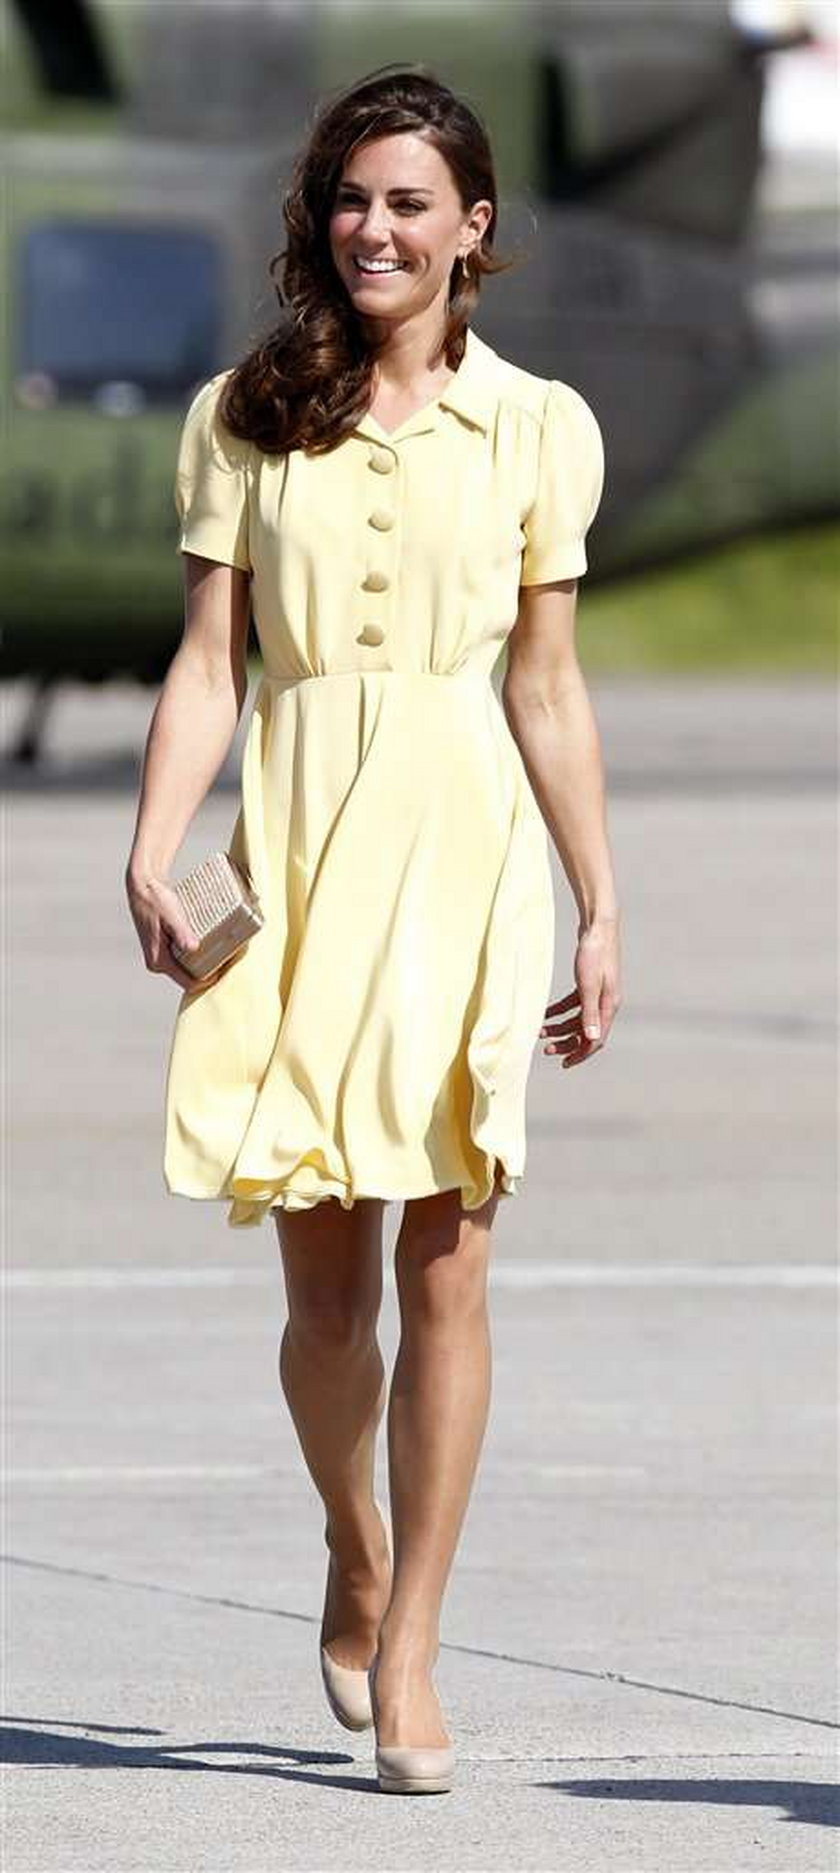 Pupa Kate Middleton